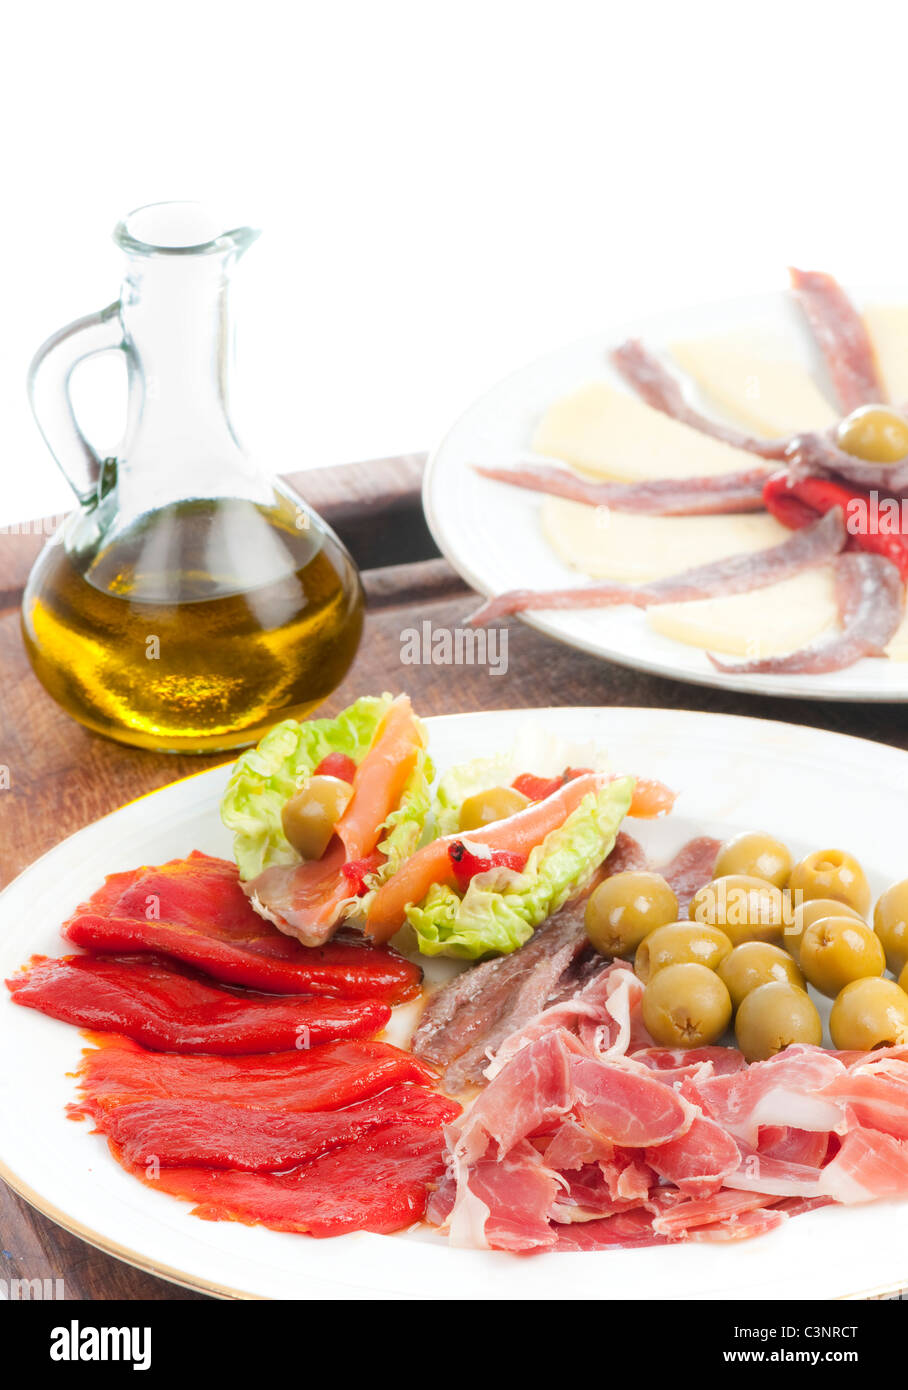 Spanische Tapas mit Olivenöl, Serrano-Schinken, Käse, gebratene Piquillo Paprika, Oliven, Sardellen und Salat auf einem Holzbrett. Stockfoto